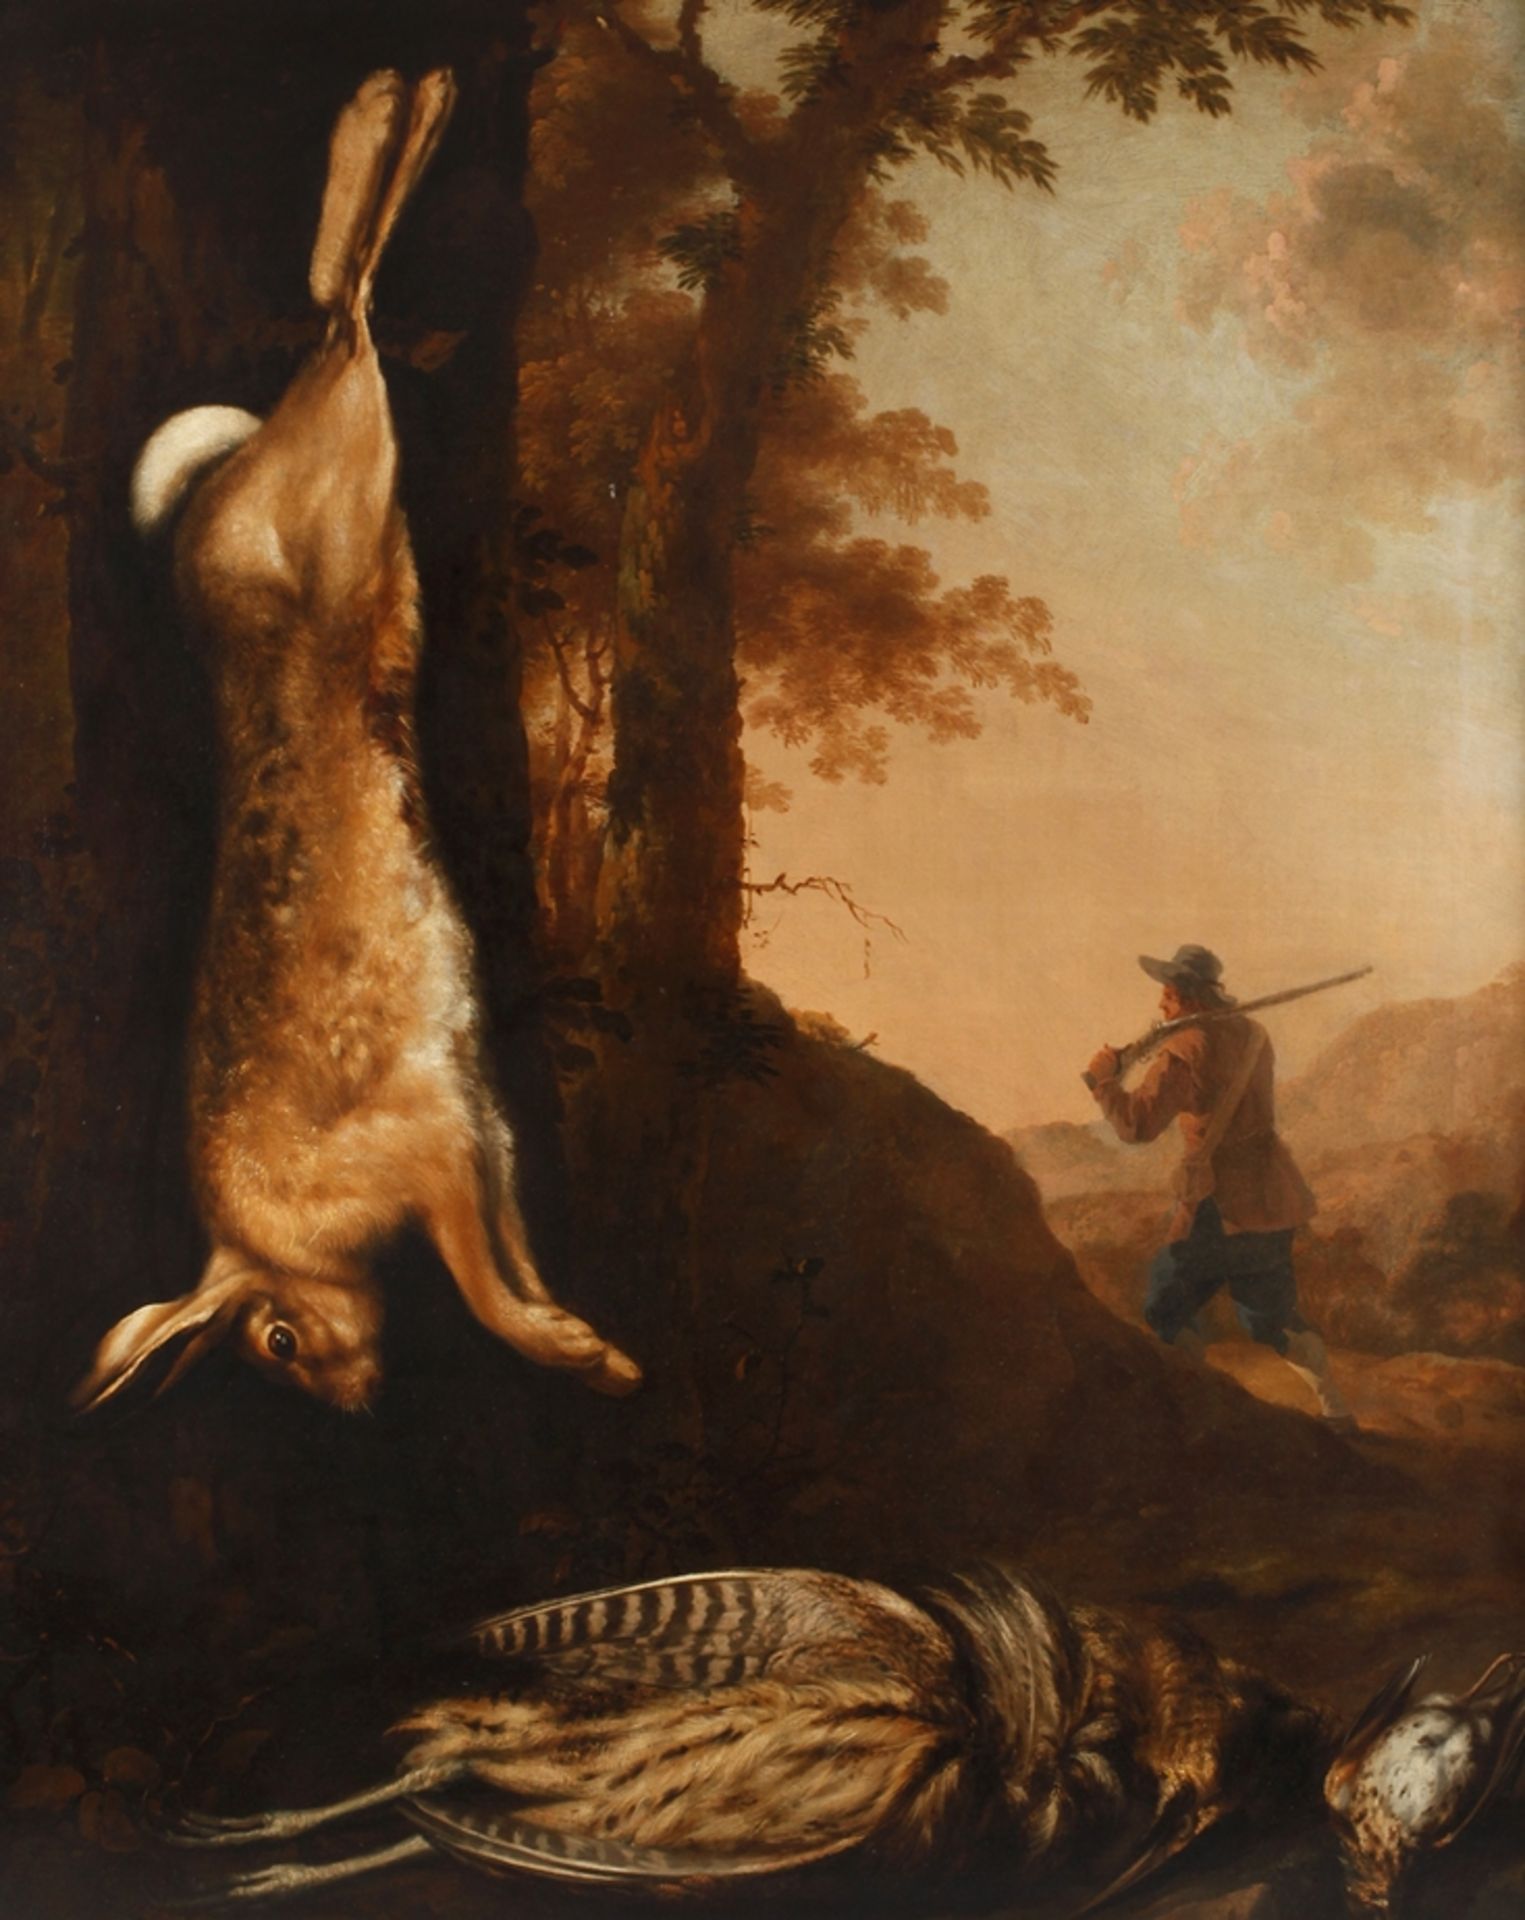 Barockes JagdstilllebenJagdstrecke aus erlegtem Hasen, Rohrdommel und Rebhuhn vor herbstlicher